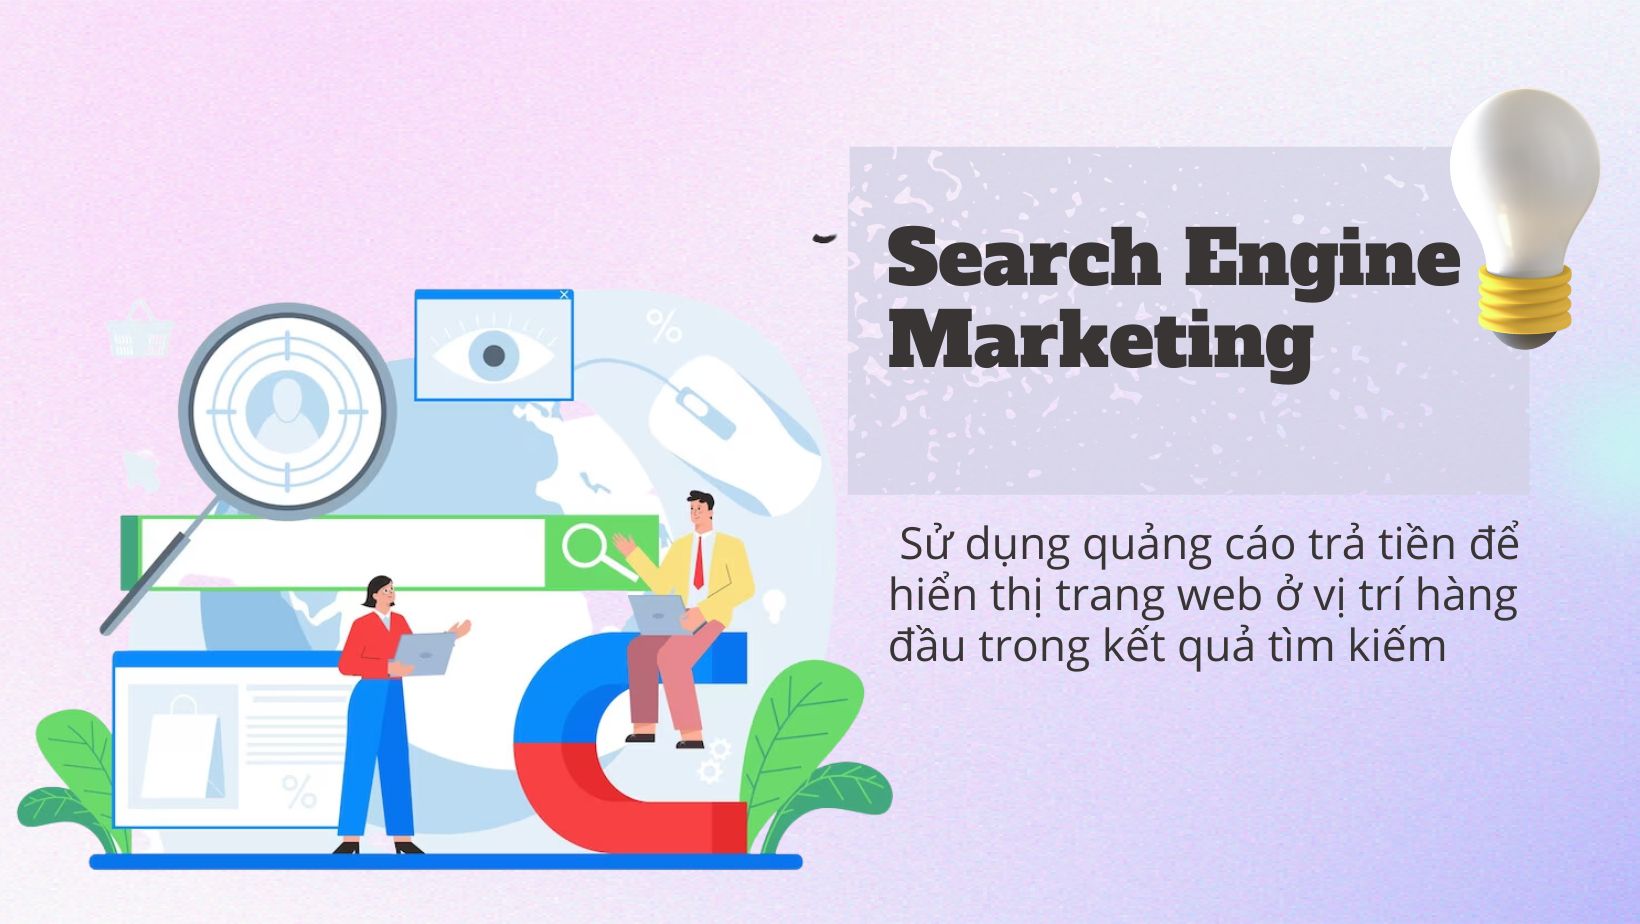 Hình thức Search Engine Marketing